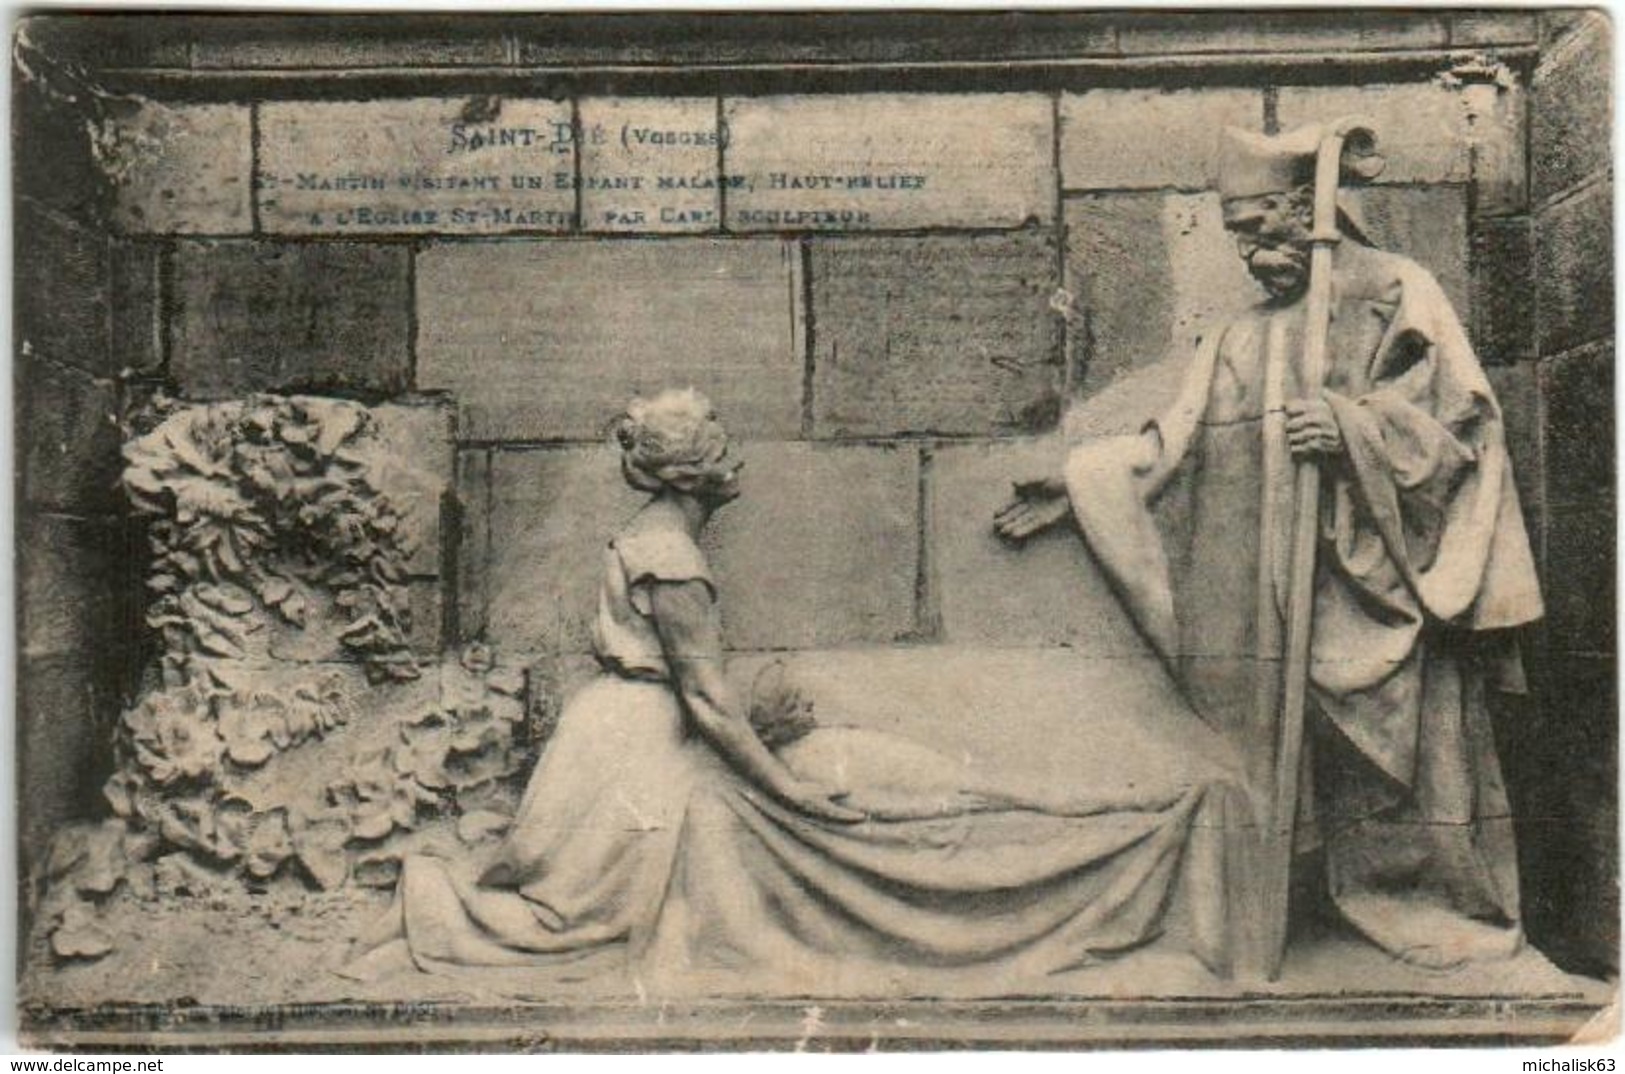 31oi  1830 CPA - SAINT DIE - SAINT MARTIN VISITANT UN ENFANT MALADE - Saint Die